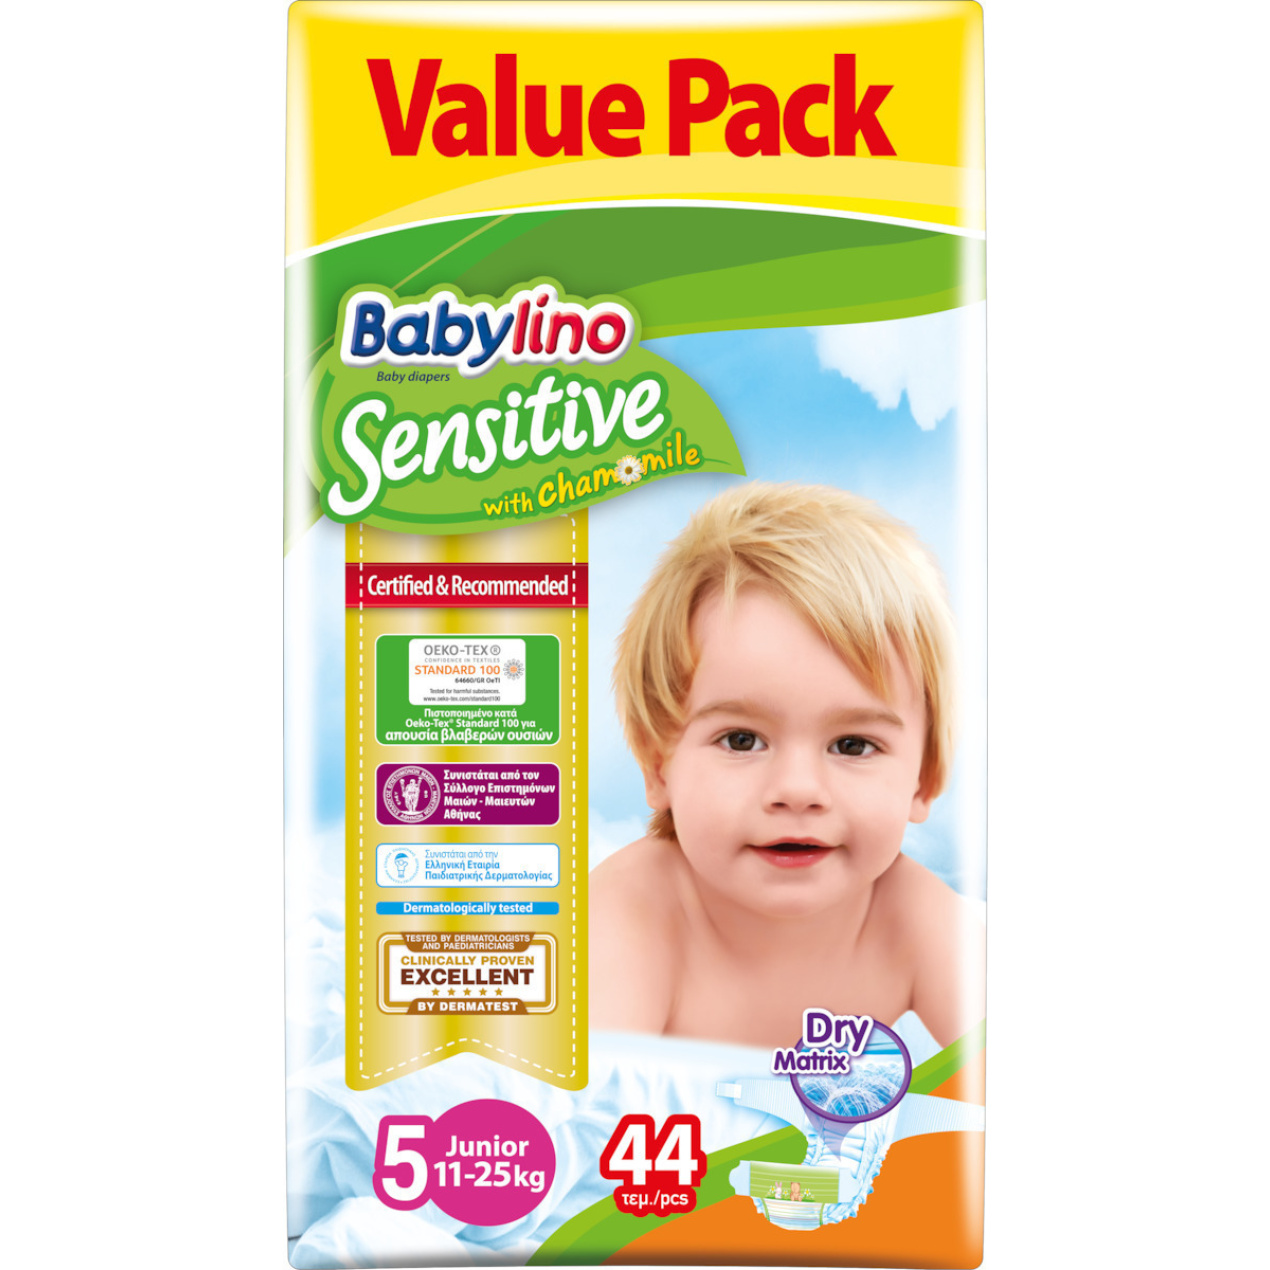 babylino-sensitive-me-xamomili-no5-value-pack-11-25kg-44tmx